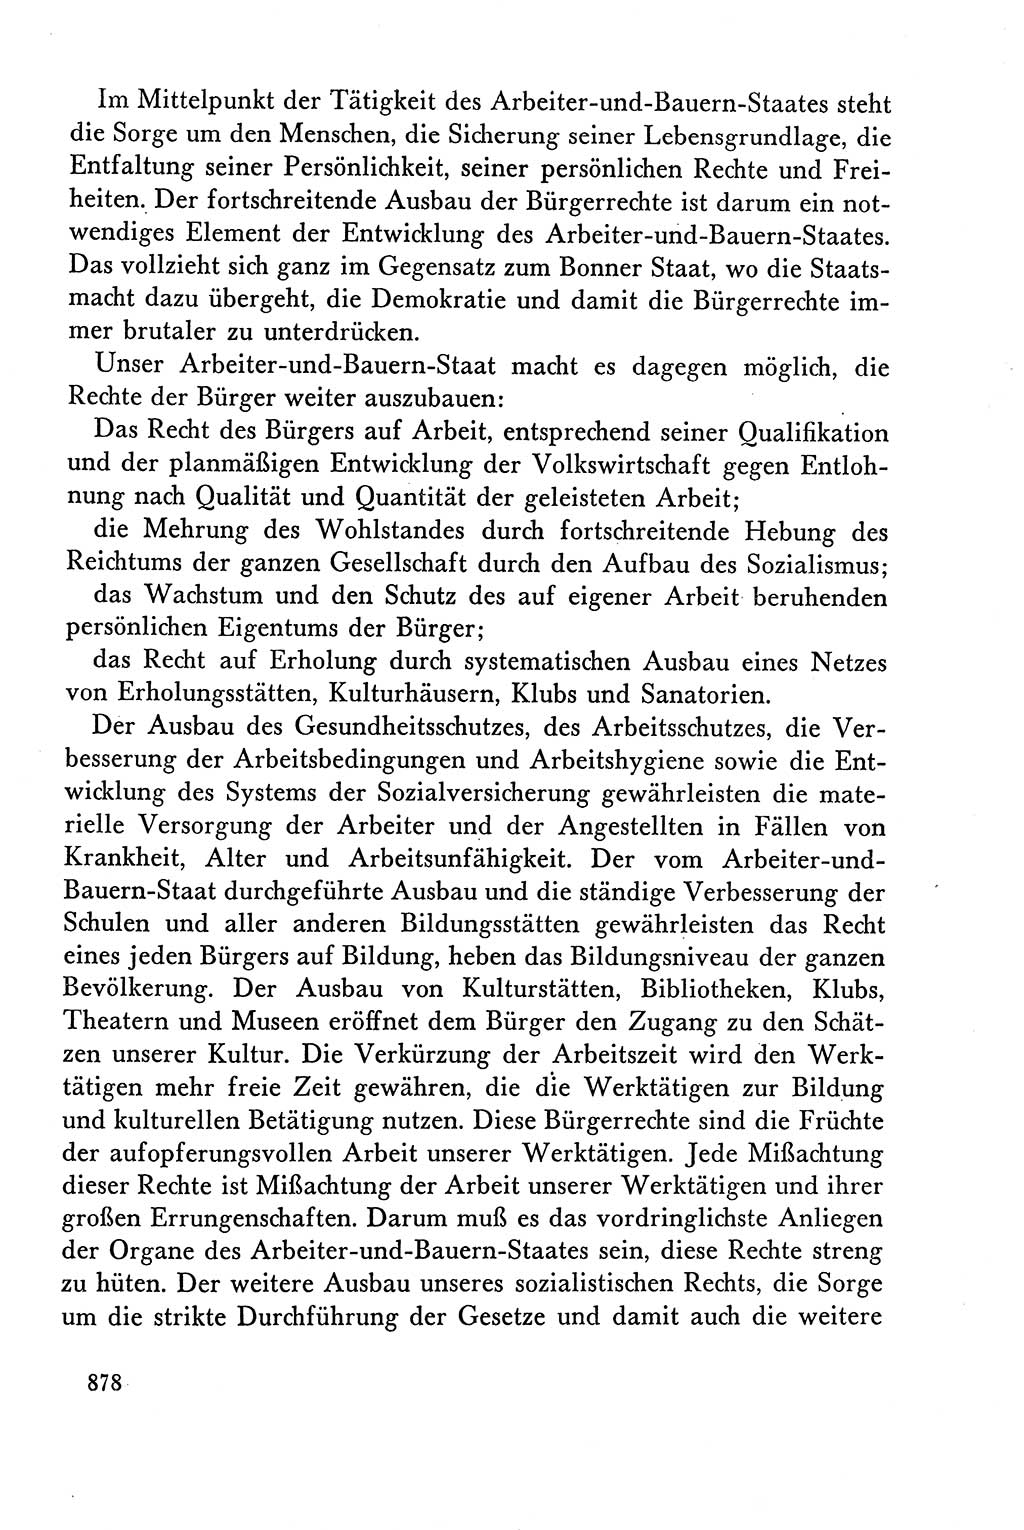 Dokumente der Sozialistischen Einheitspartei Deutschlands (SED) [Deutsche Demokratische Republik (DDR)] 1958-1959, Seite 878 (Dok. SED DDR 1958-1959, S. 878)